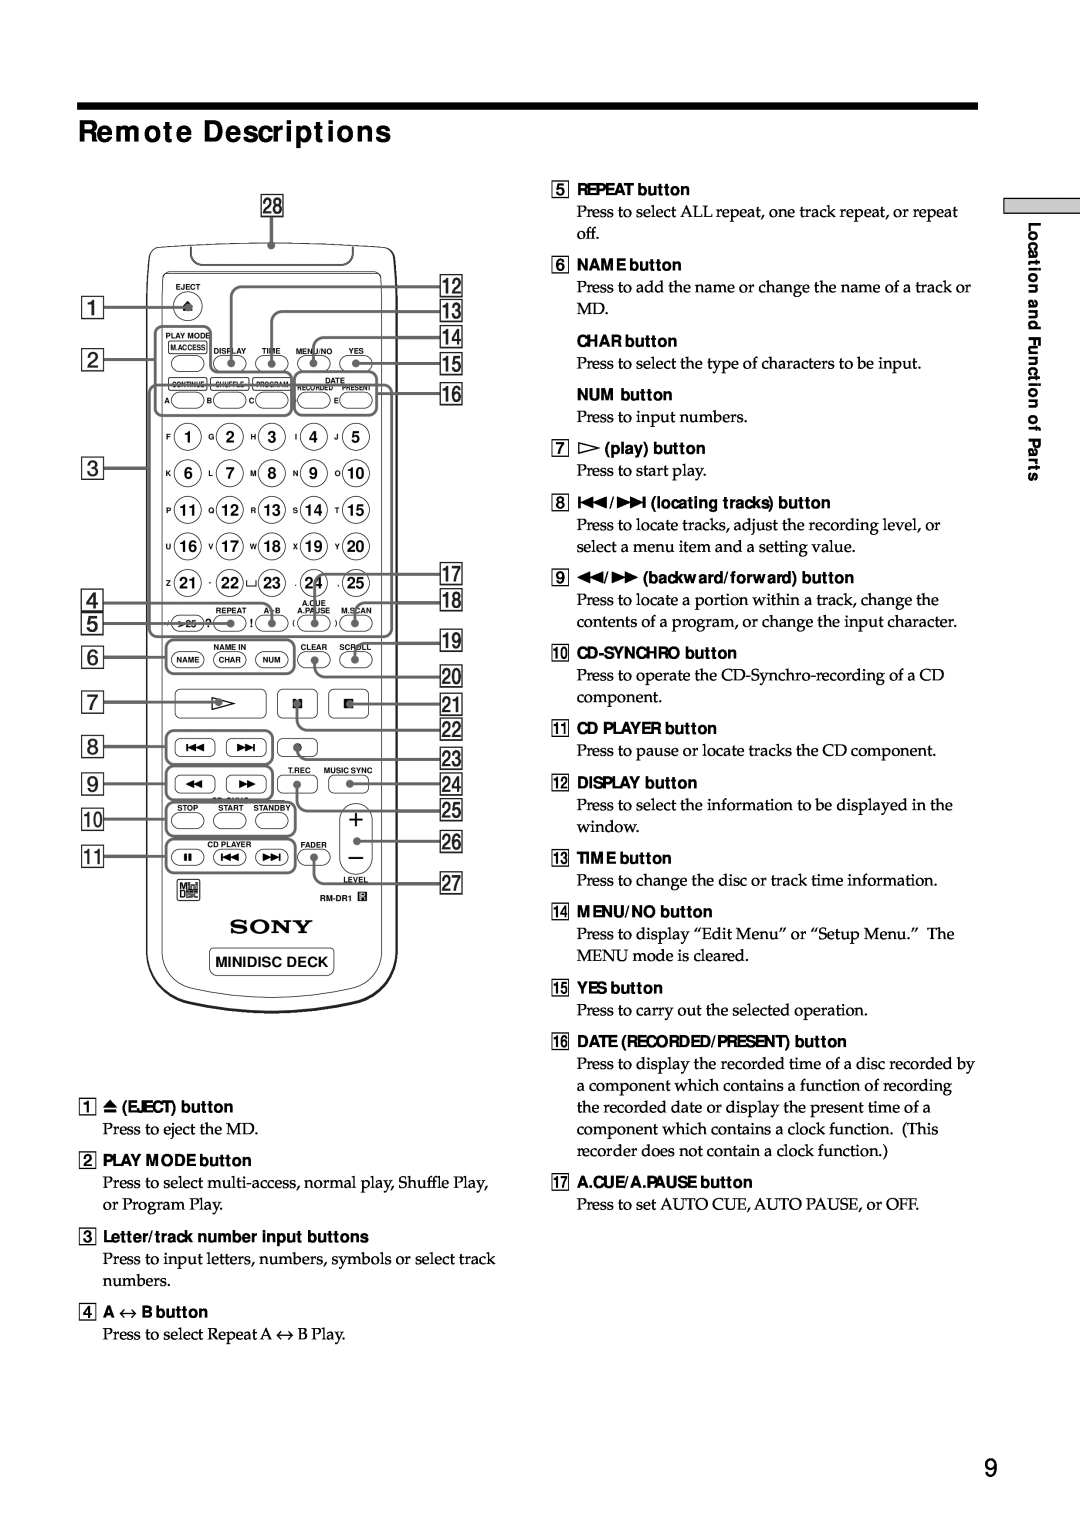 Sony MDS-E10 manual Remote Descriptions 